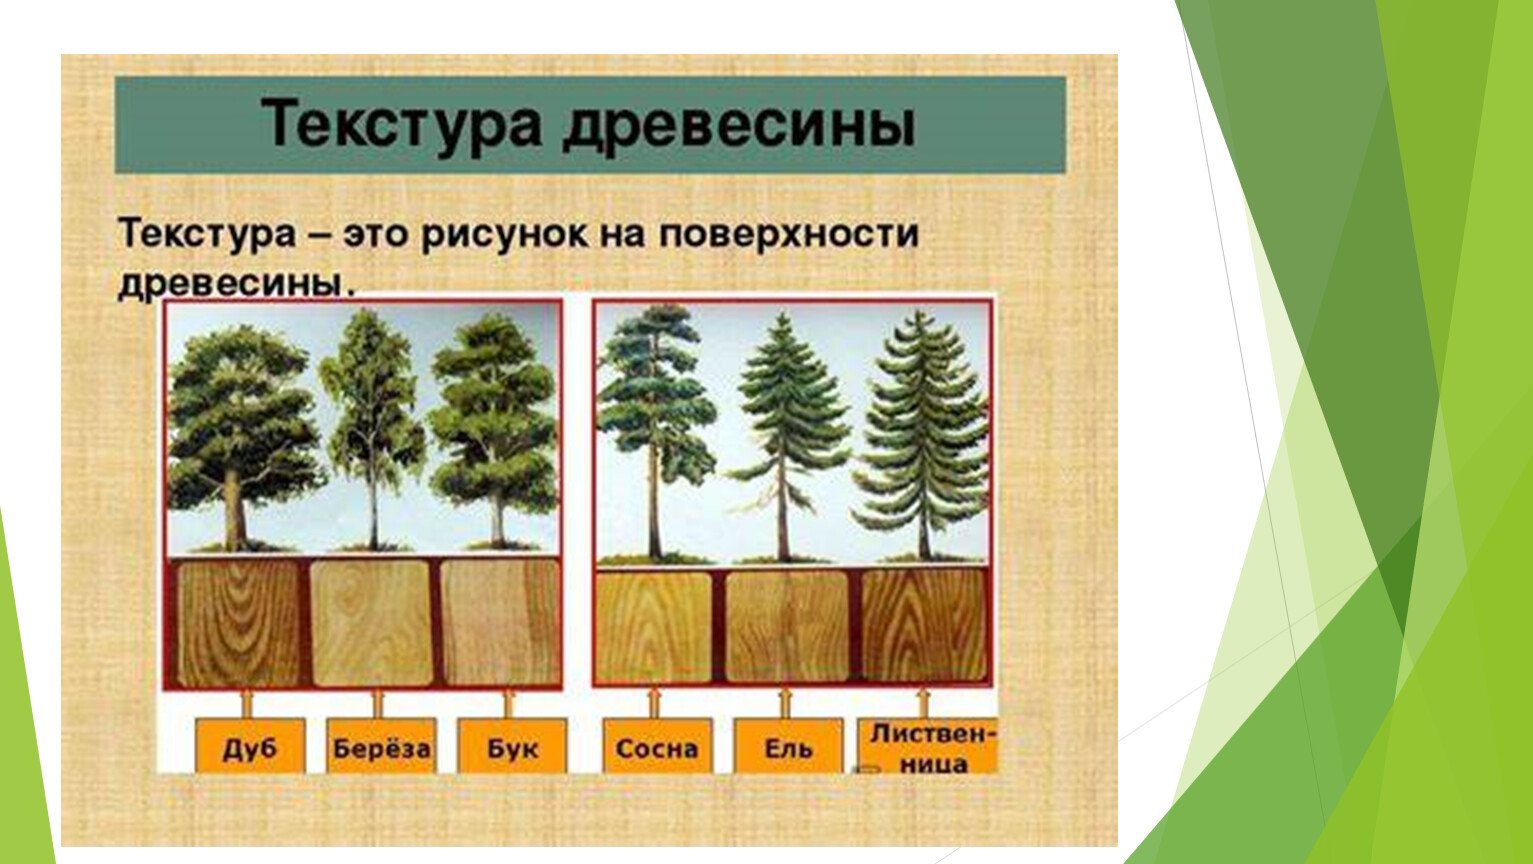 Липа сосна ель это деревья. Образцы древесины. Лиственные породы древесины. Текстура лиственных пород древесины. Хвойные и лиственные породы деревьев.